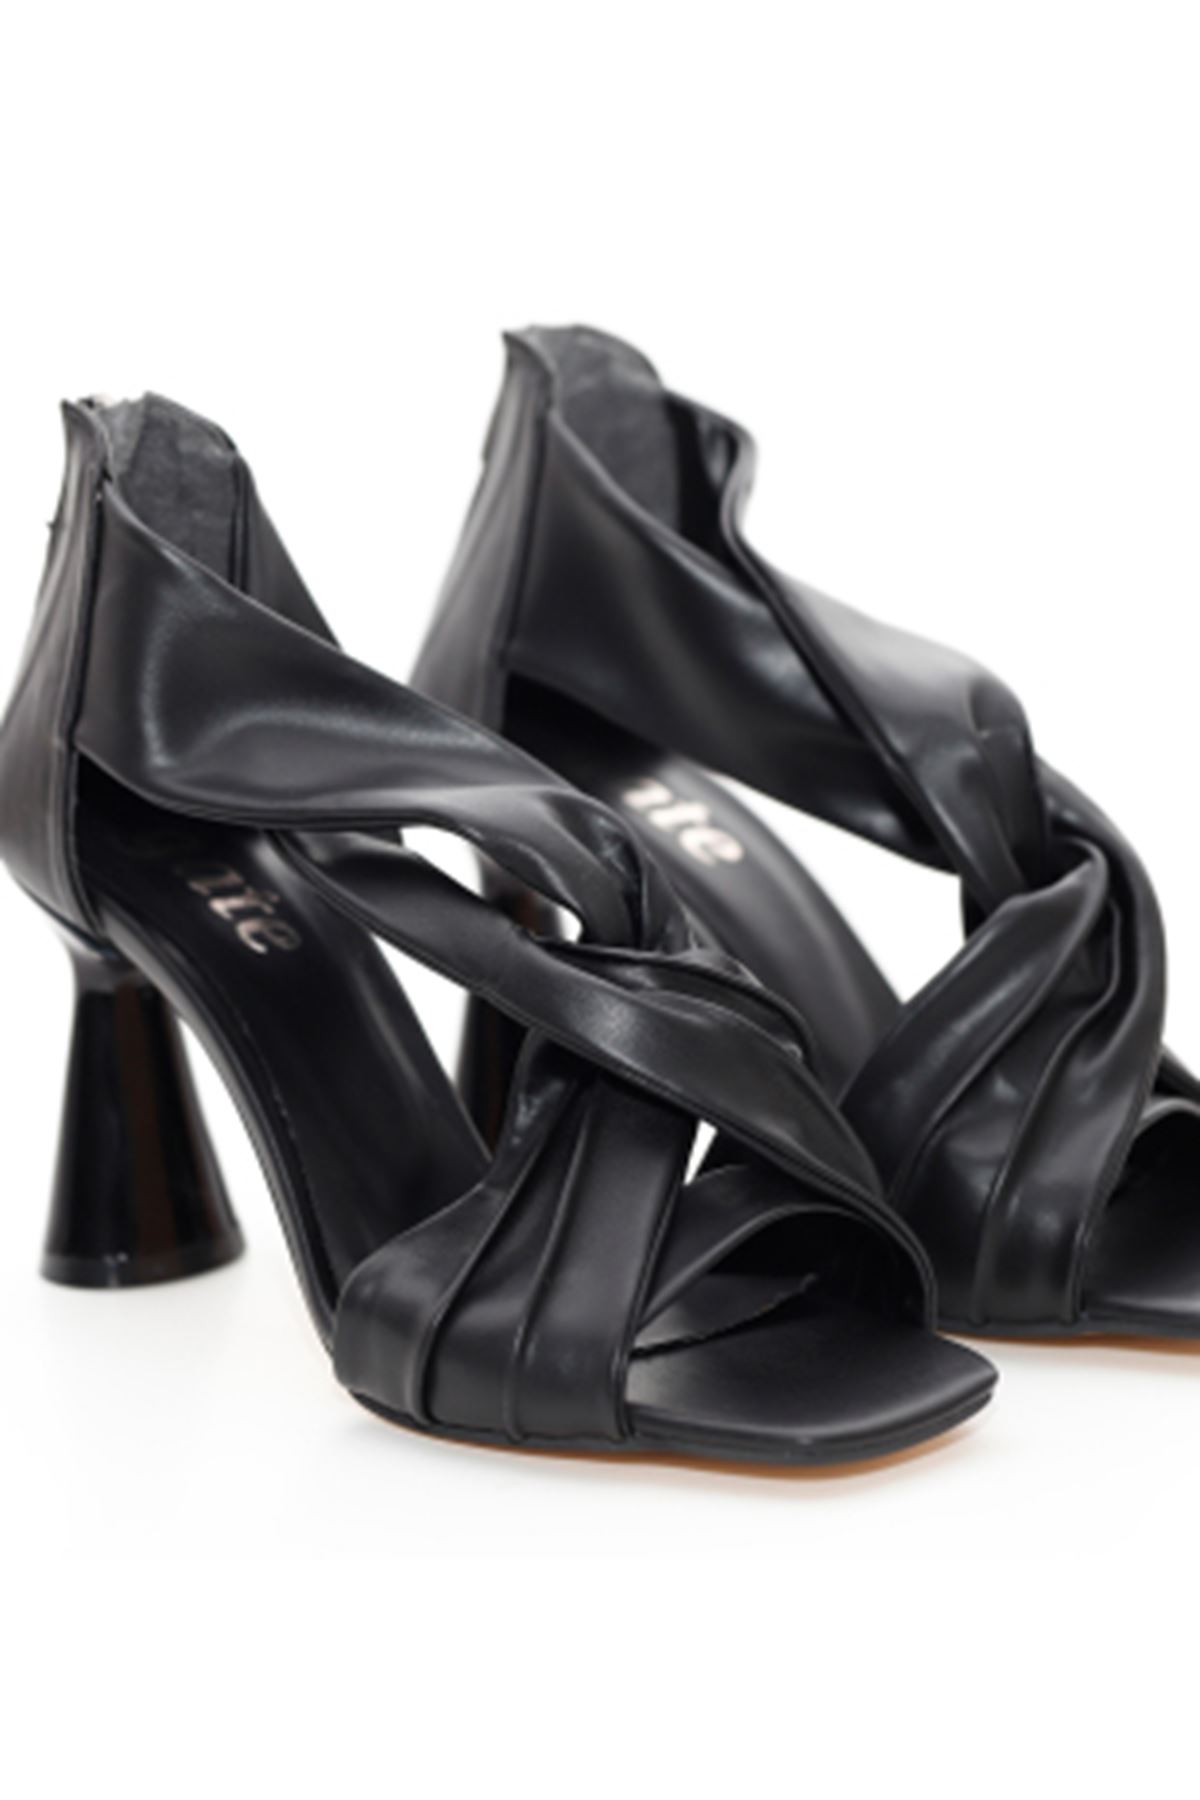 Kadın Arkadan Fermuarlı Topuklu Ayakkabı ZEN438  Gate Shoes-Siyah